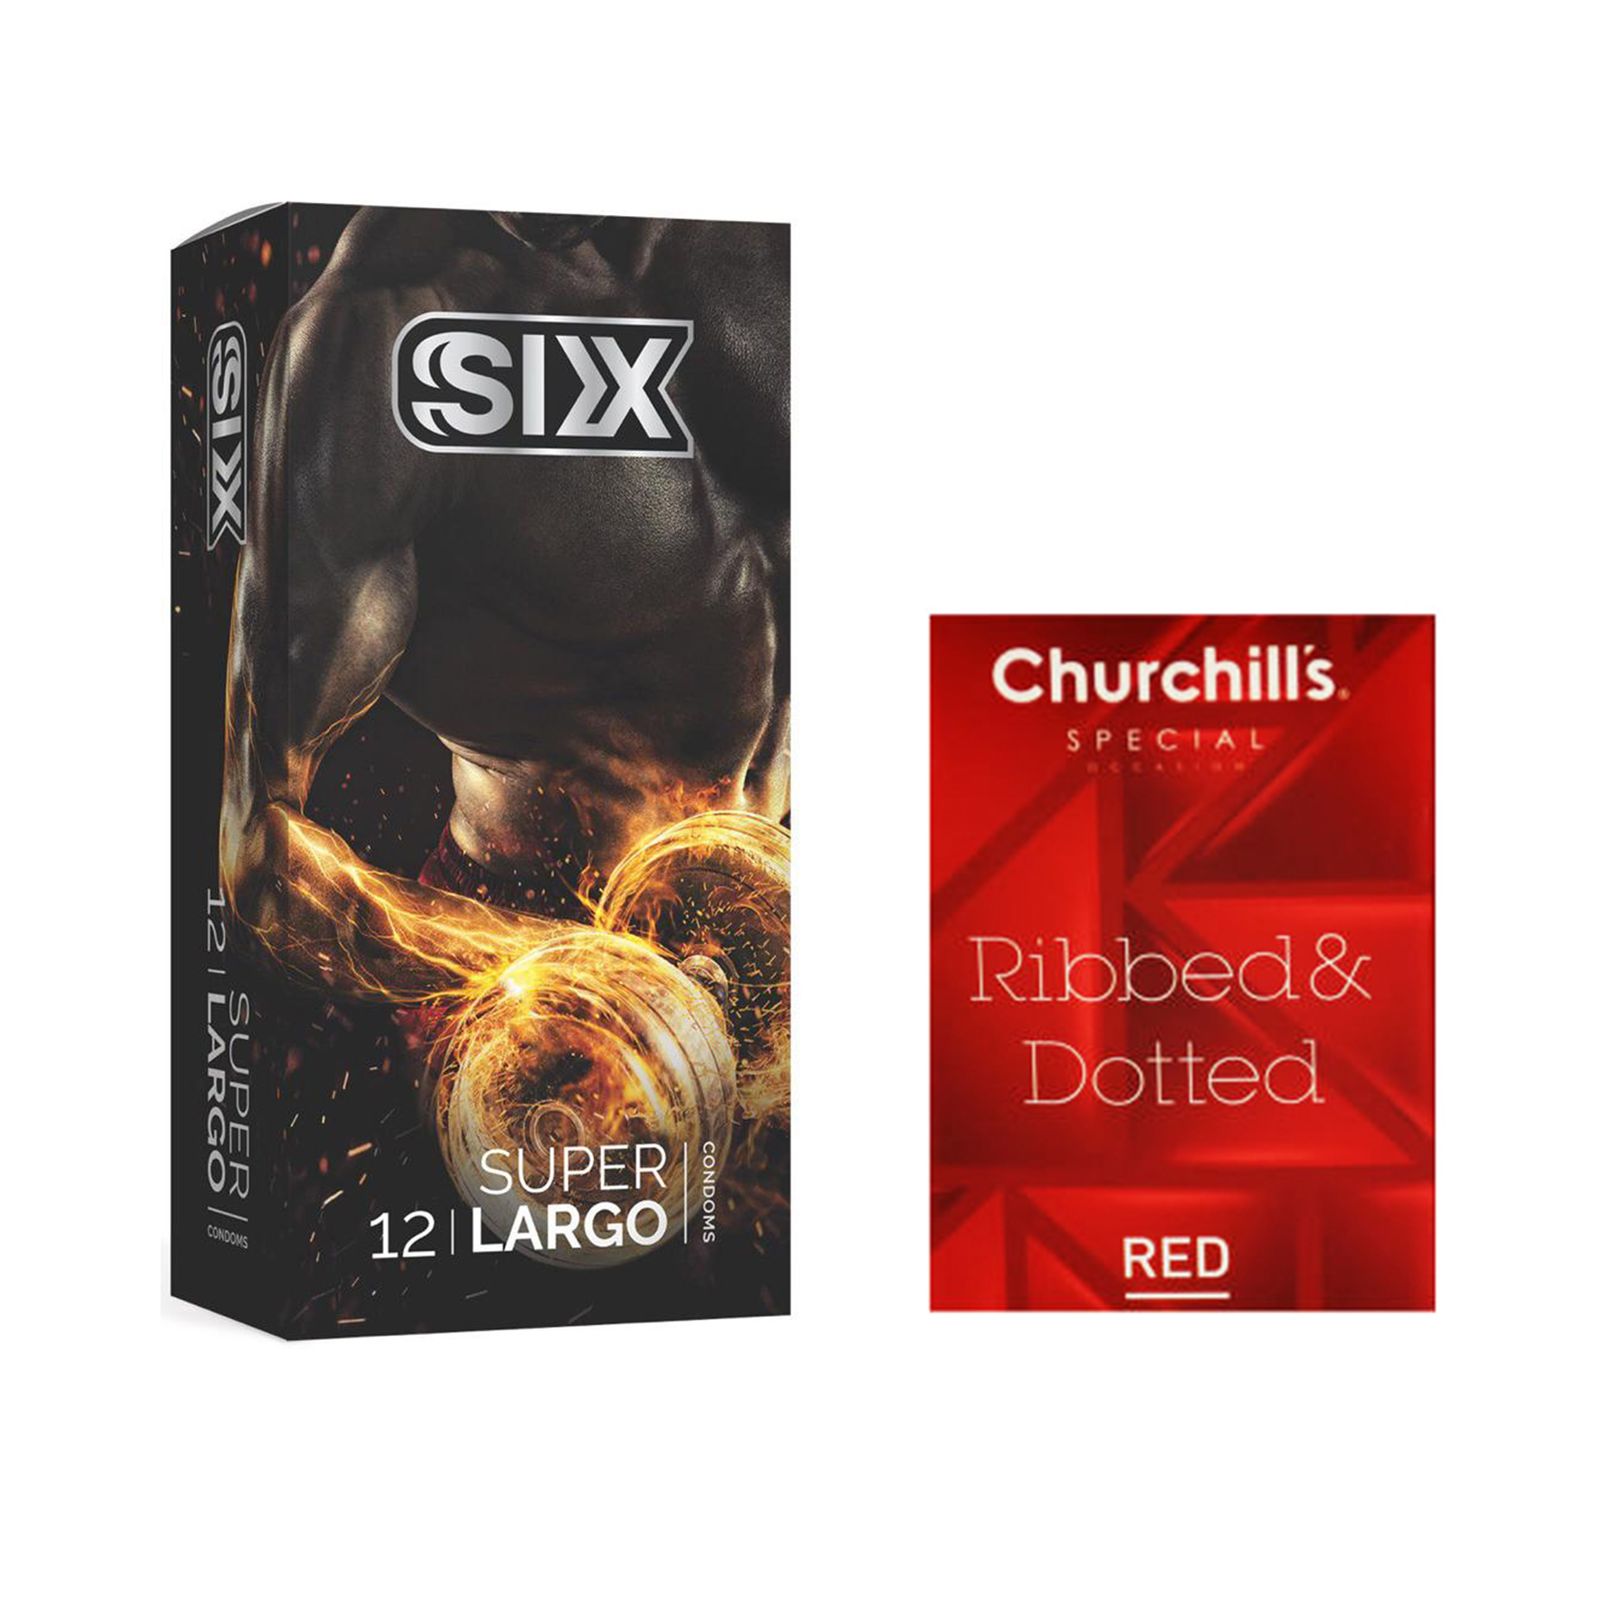 کاندوم سیکس مدل Super Largo بسته 12 عددی به همراه کاندوم چرچیلز مدل Hot Gel بسته 3 عددی -  - 2